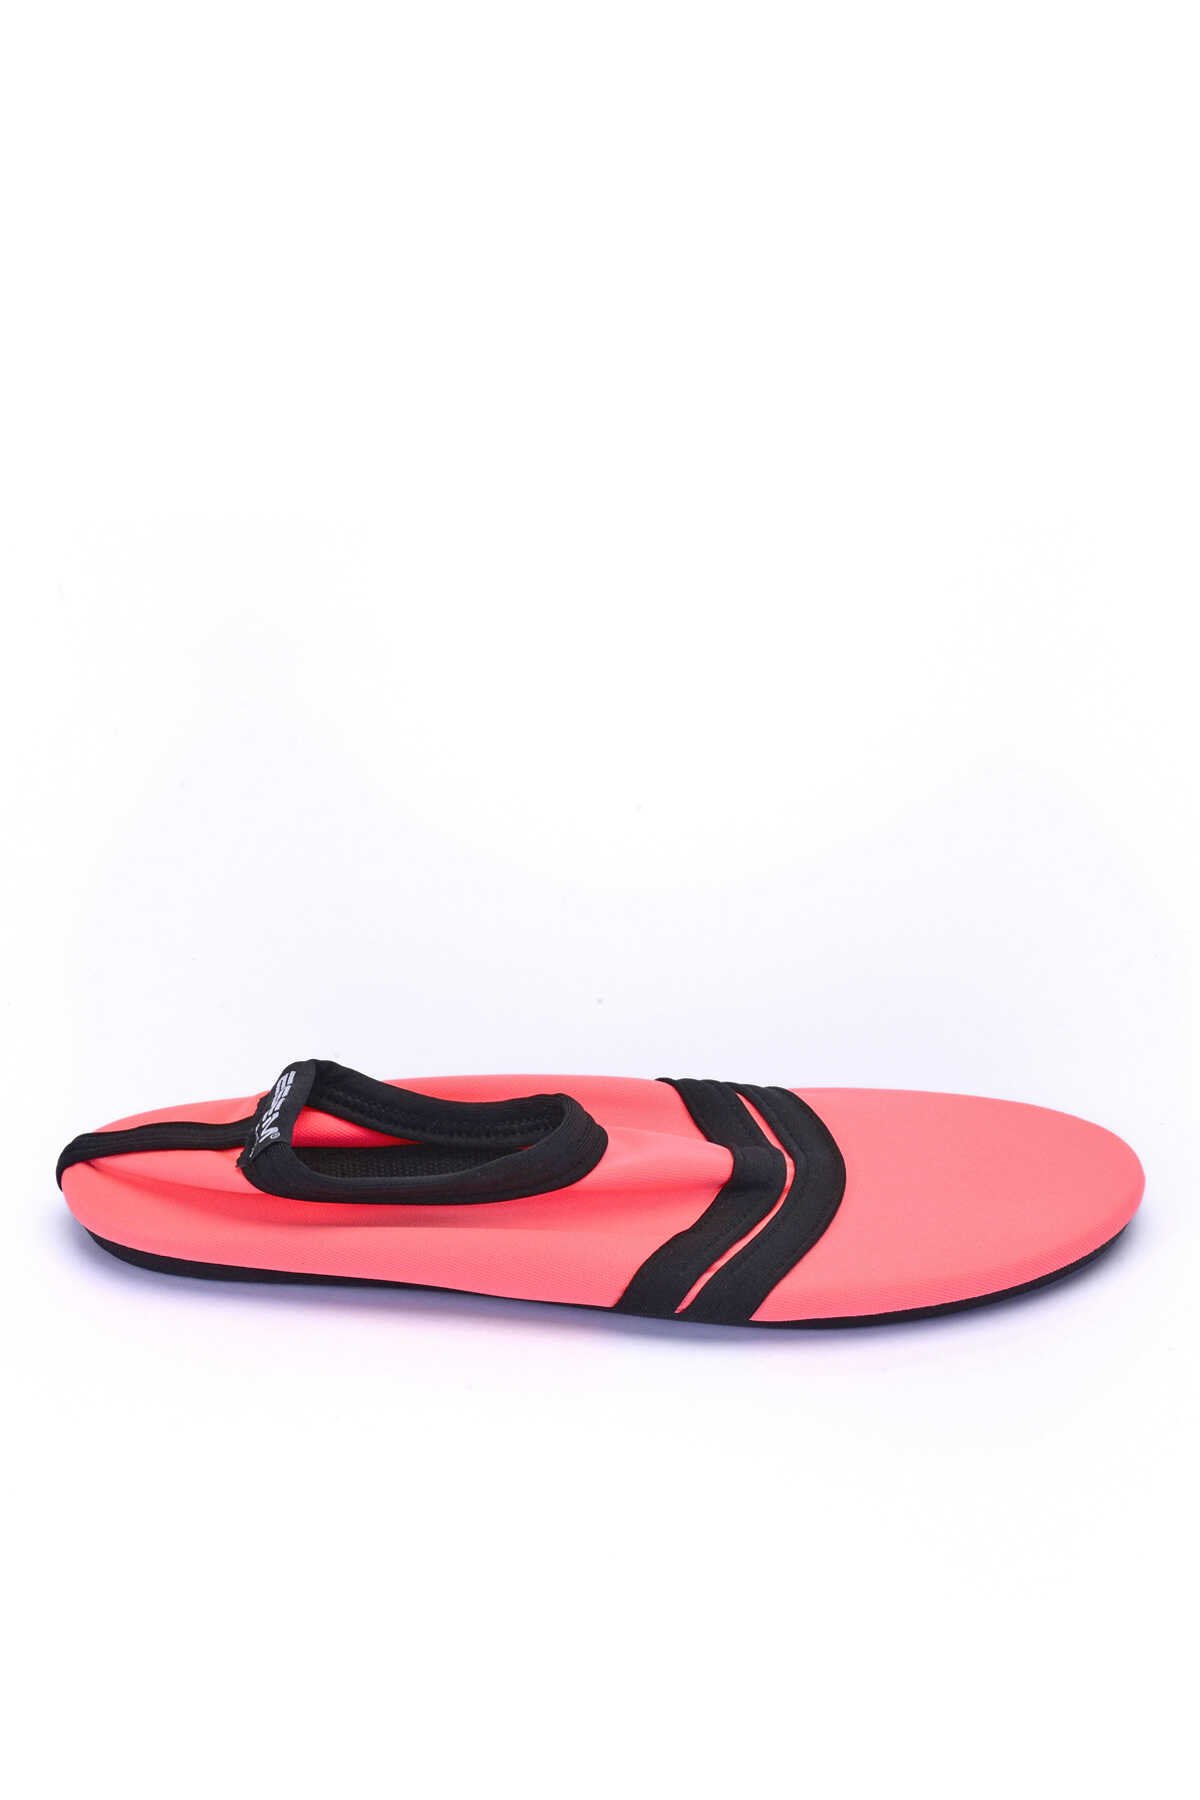 ESEM - ESEM SAVANA Deniz Ayakkabısı Kız Çocuk Ayakkabı Mercan